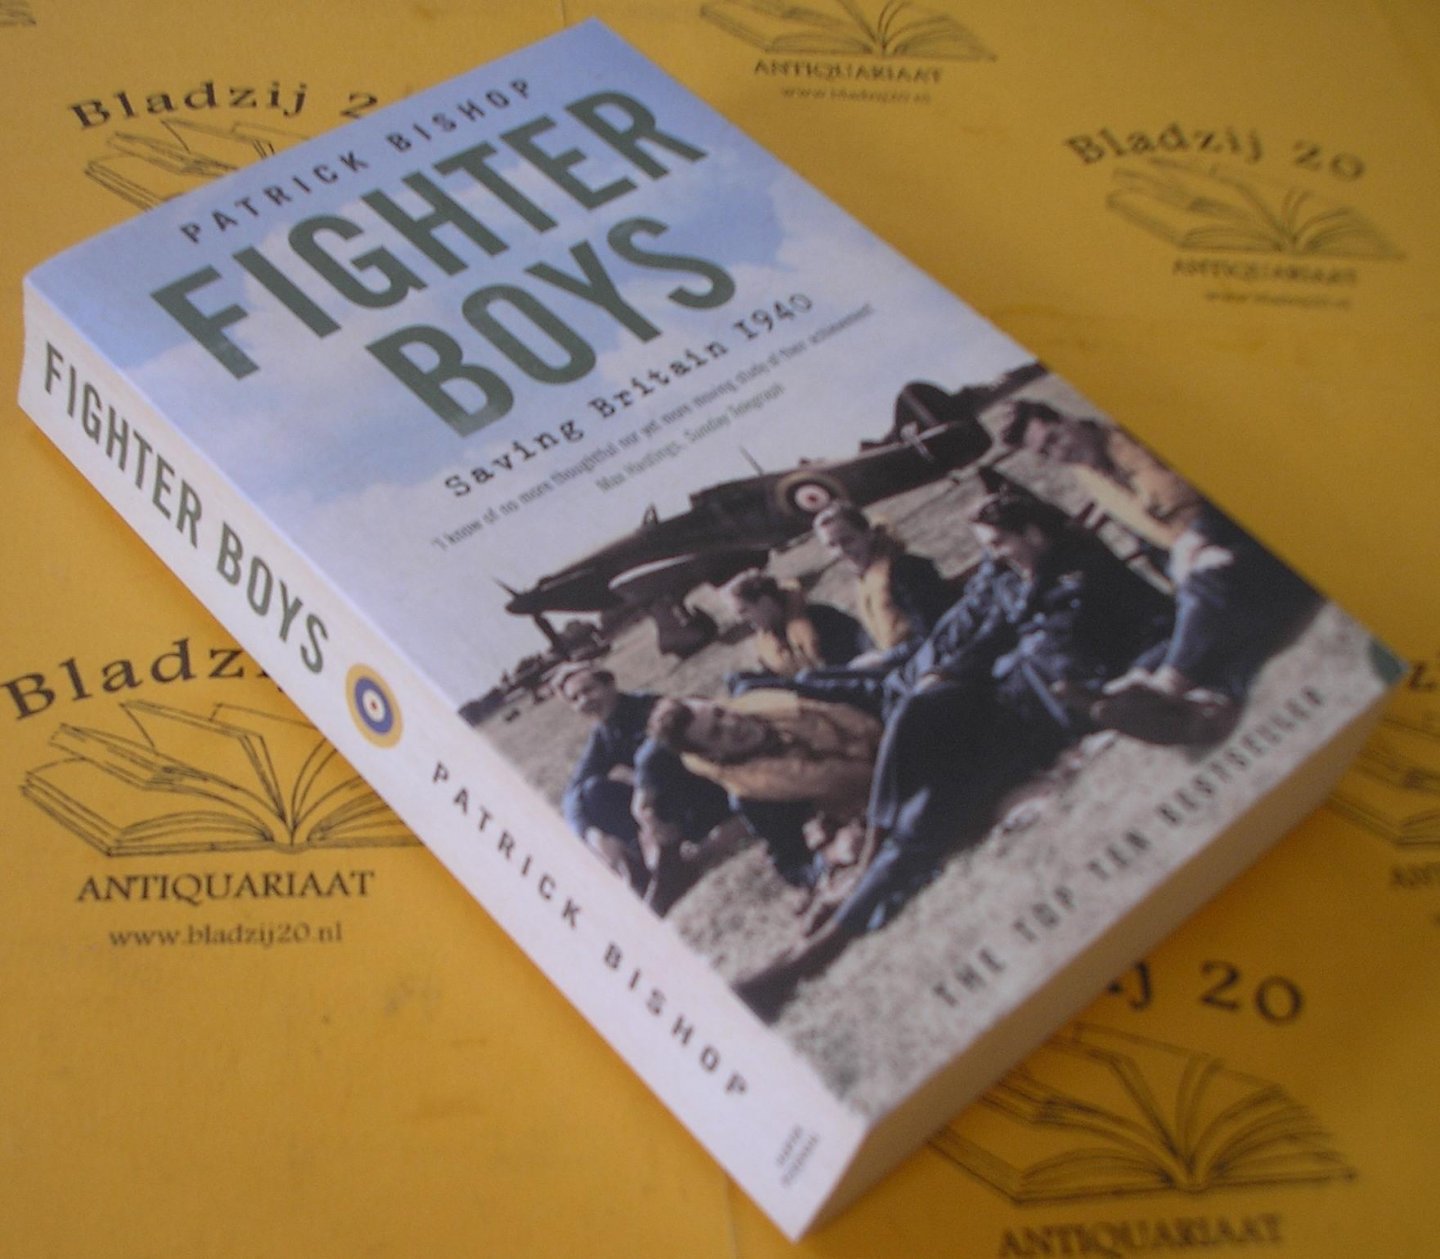 Bishop, Patrcik. - Fighter Boys. Saving Brittain 1940.